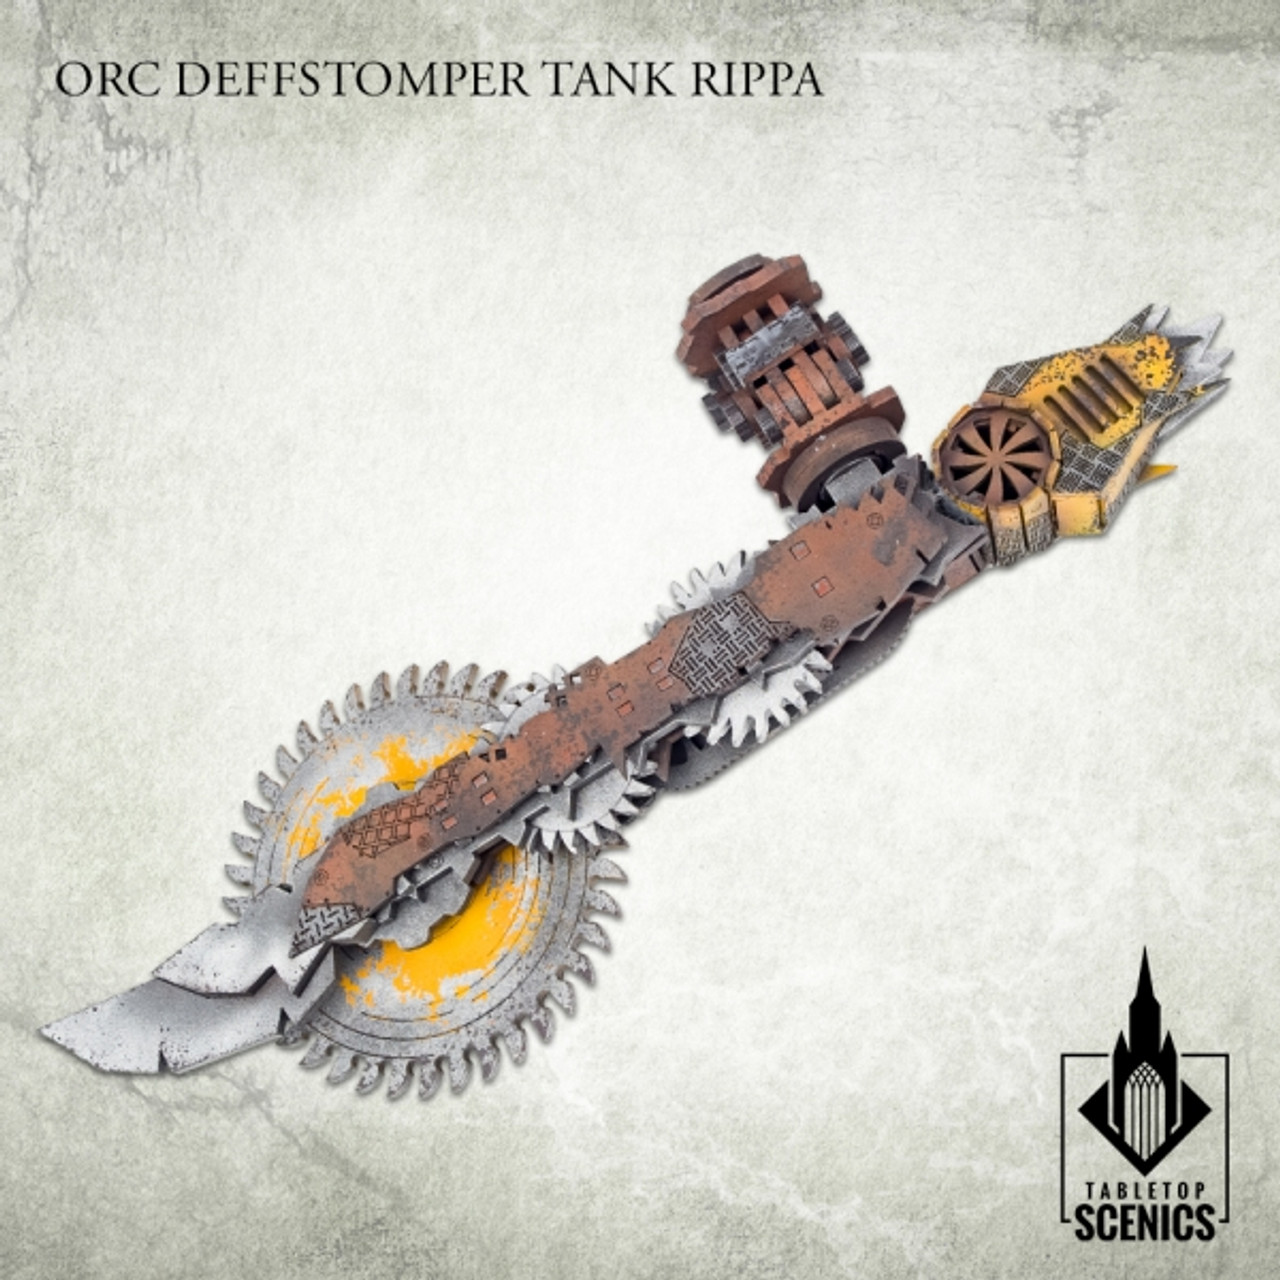 Orc Deffstomper Tank Rippa - KRTS149